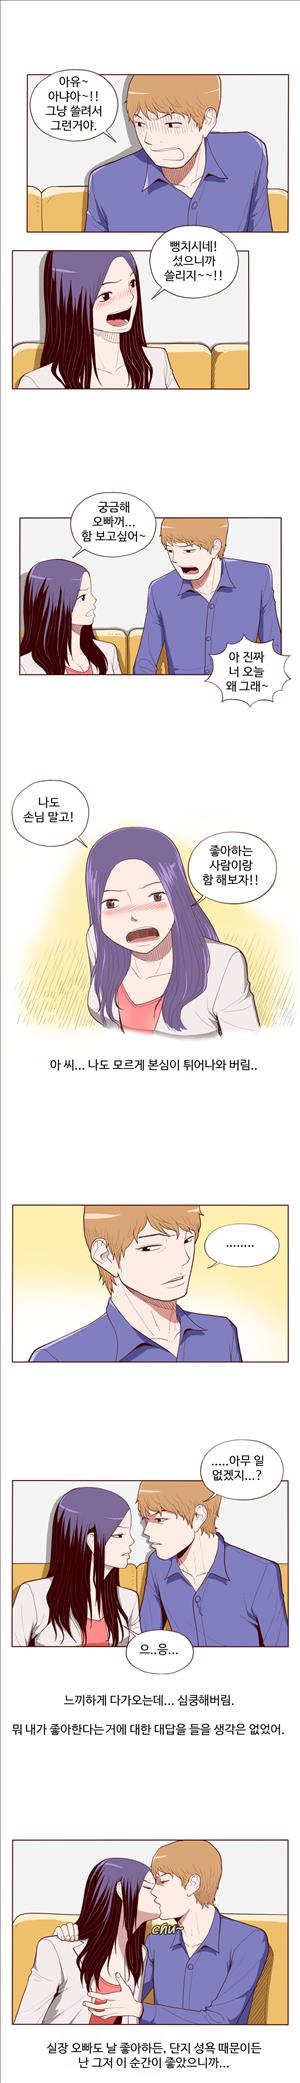 미색 - 썰만화 시즌4 52화 - 오피녀의 비밀(하)_3